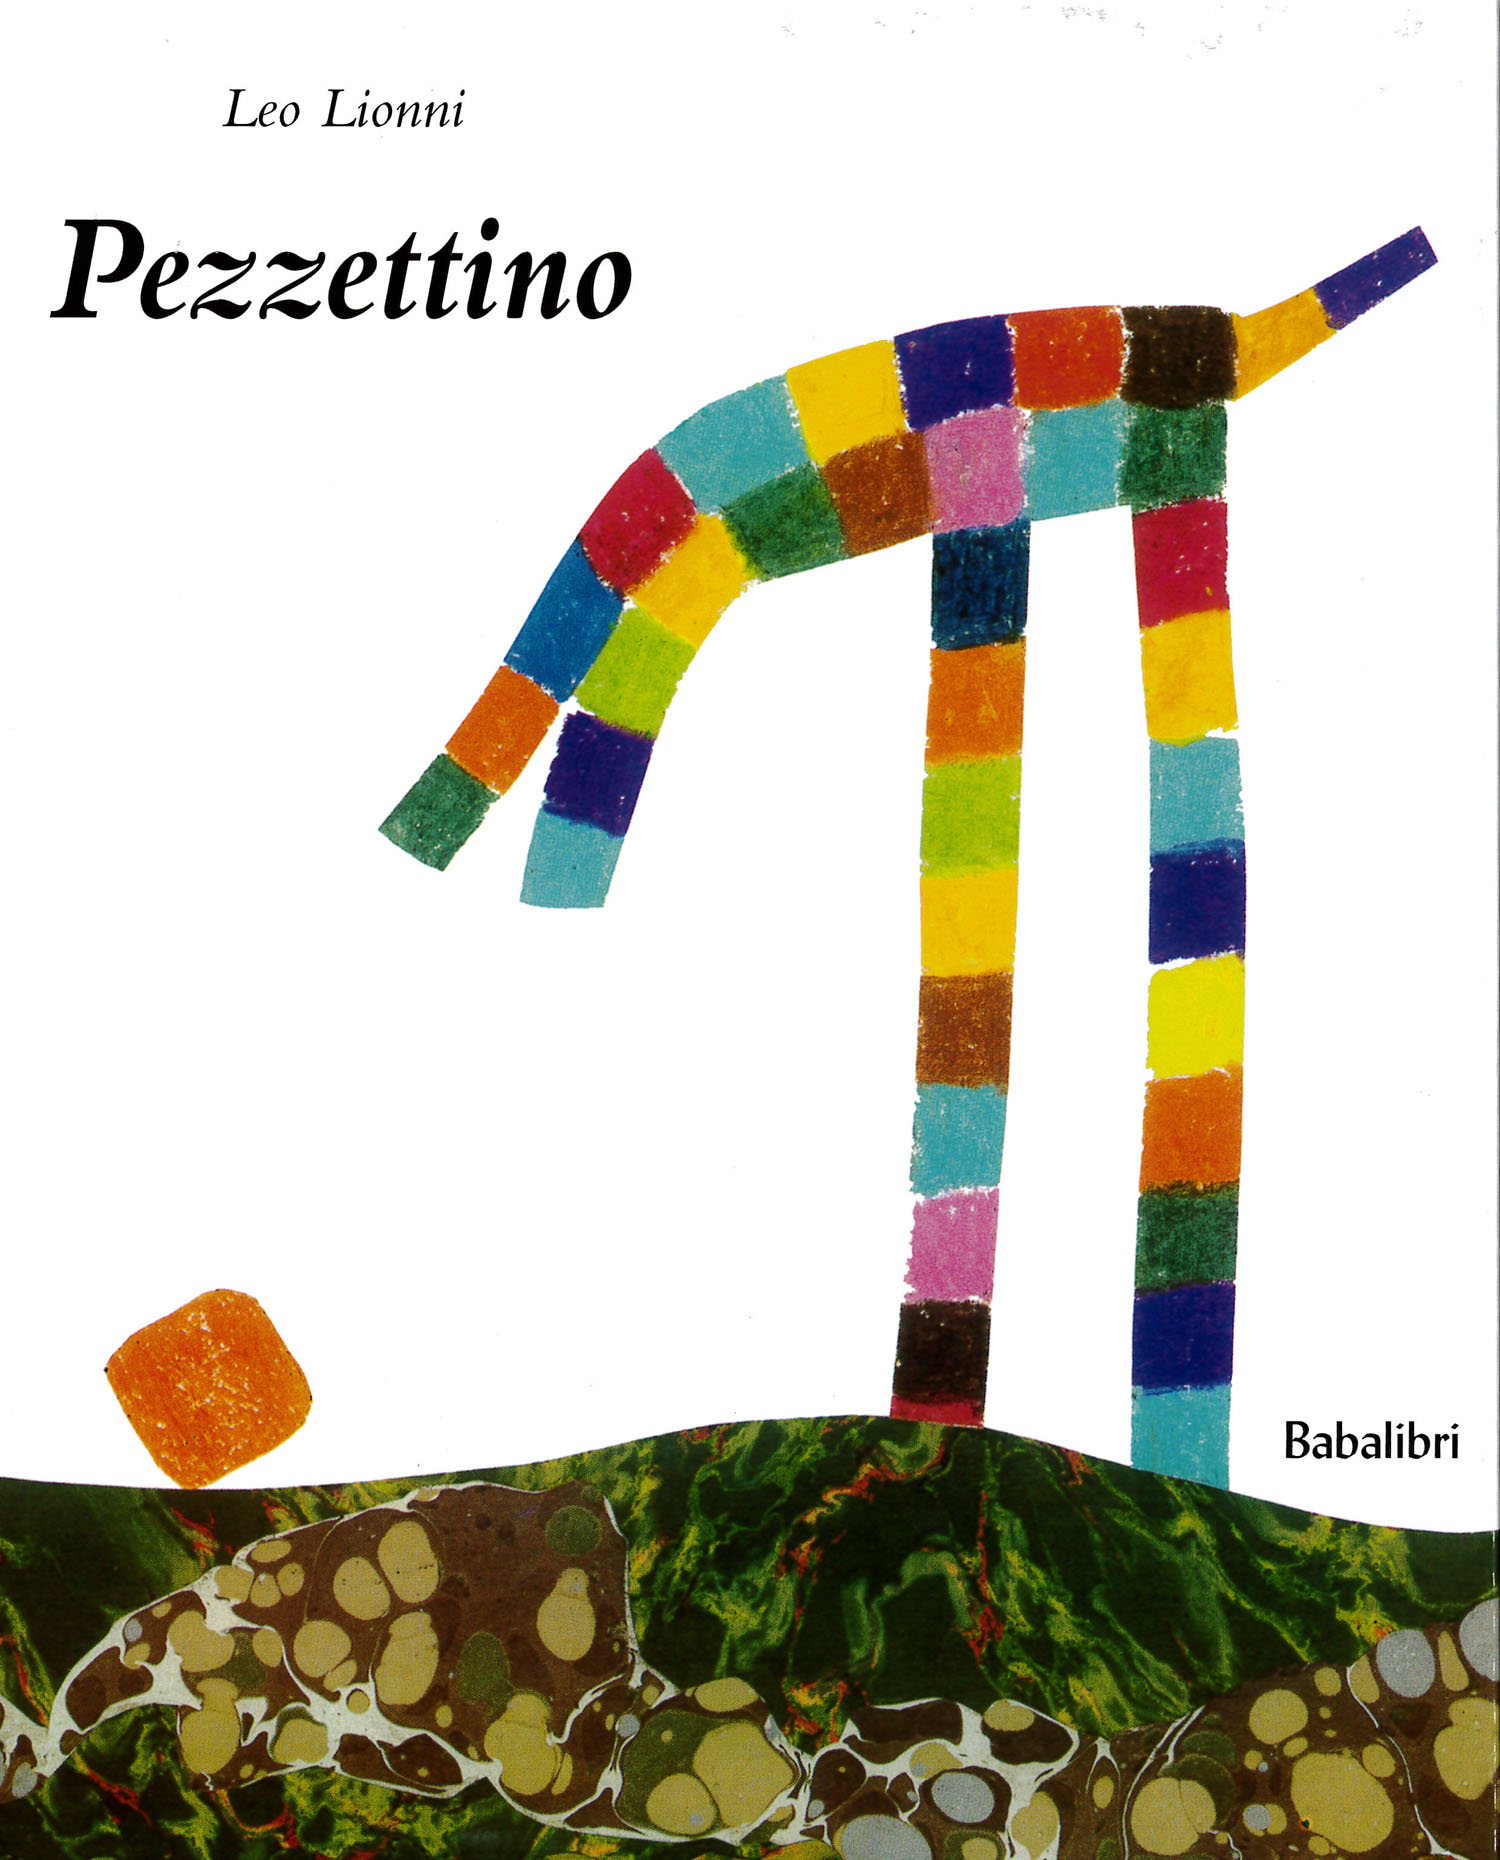 御購入のお礼：Pezzettino 20190409